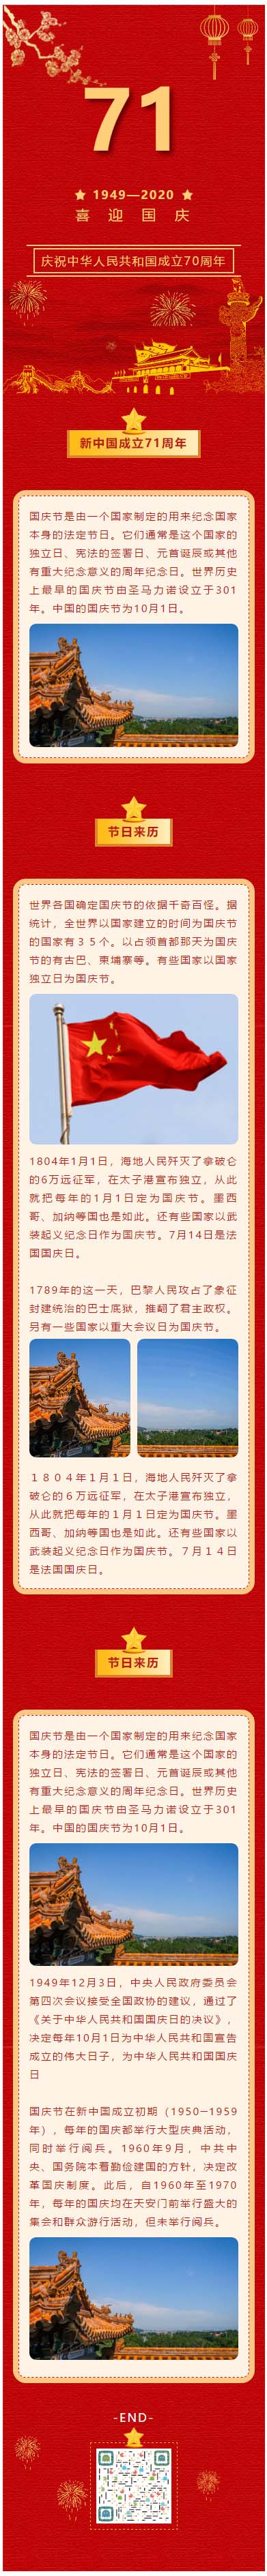 2021国庆节庆祝中华人民共和国成立71周年红色背景动态背景烟花微信公众号推文模板推送素材